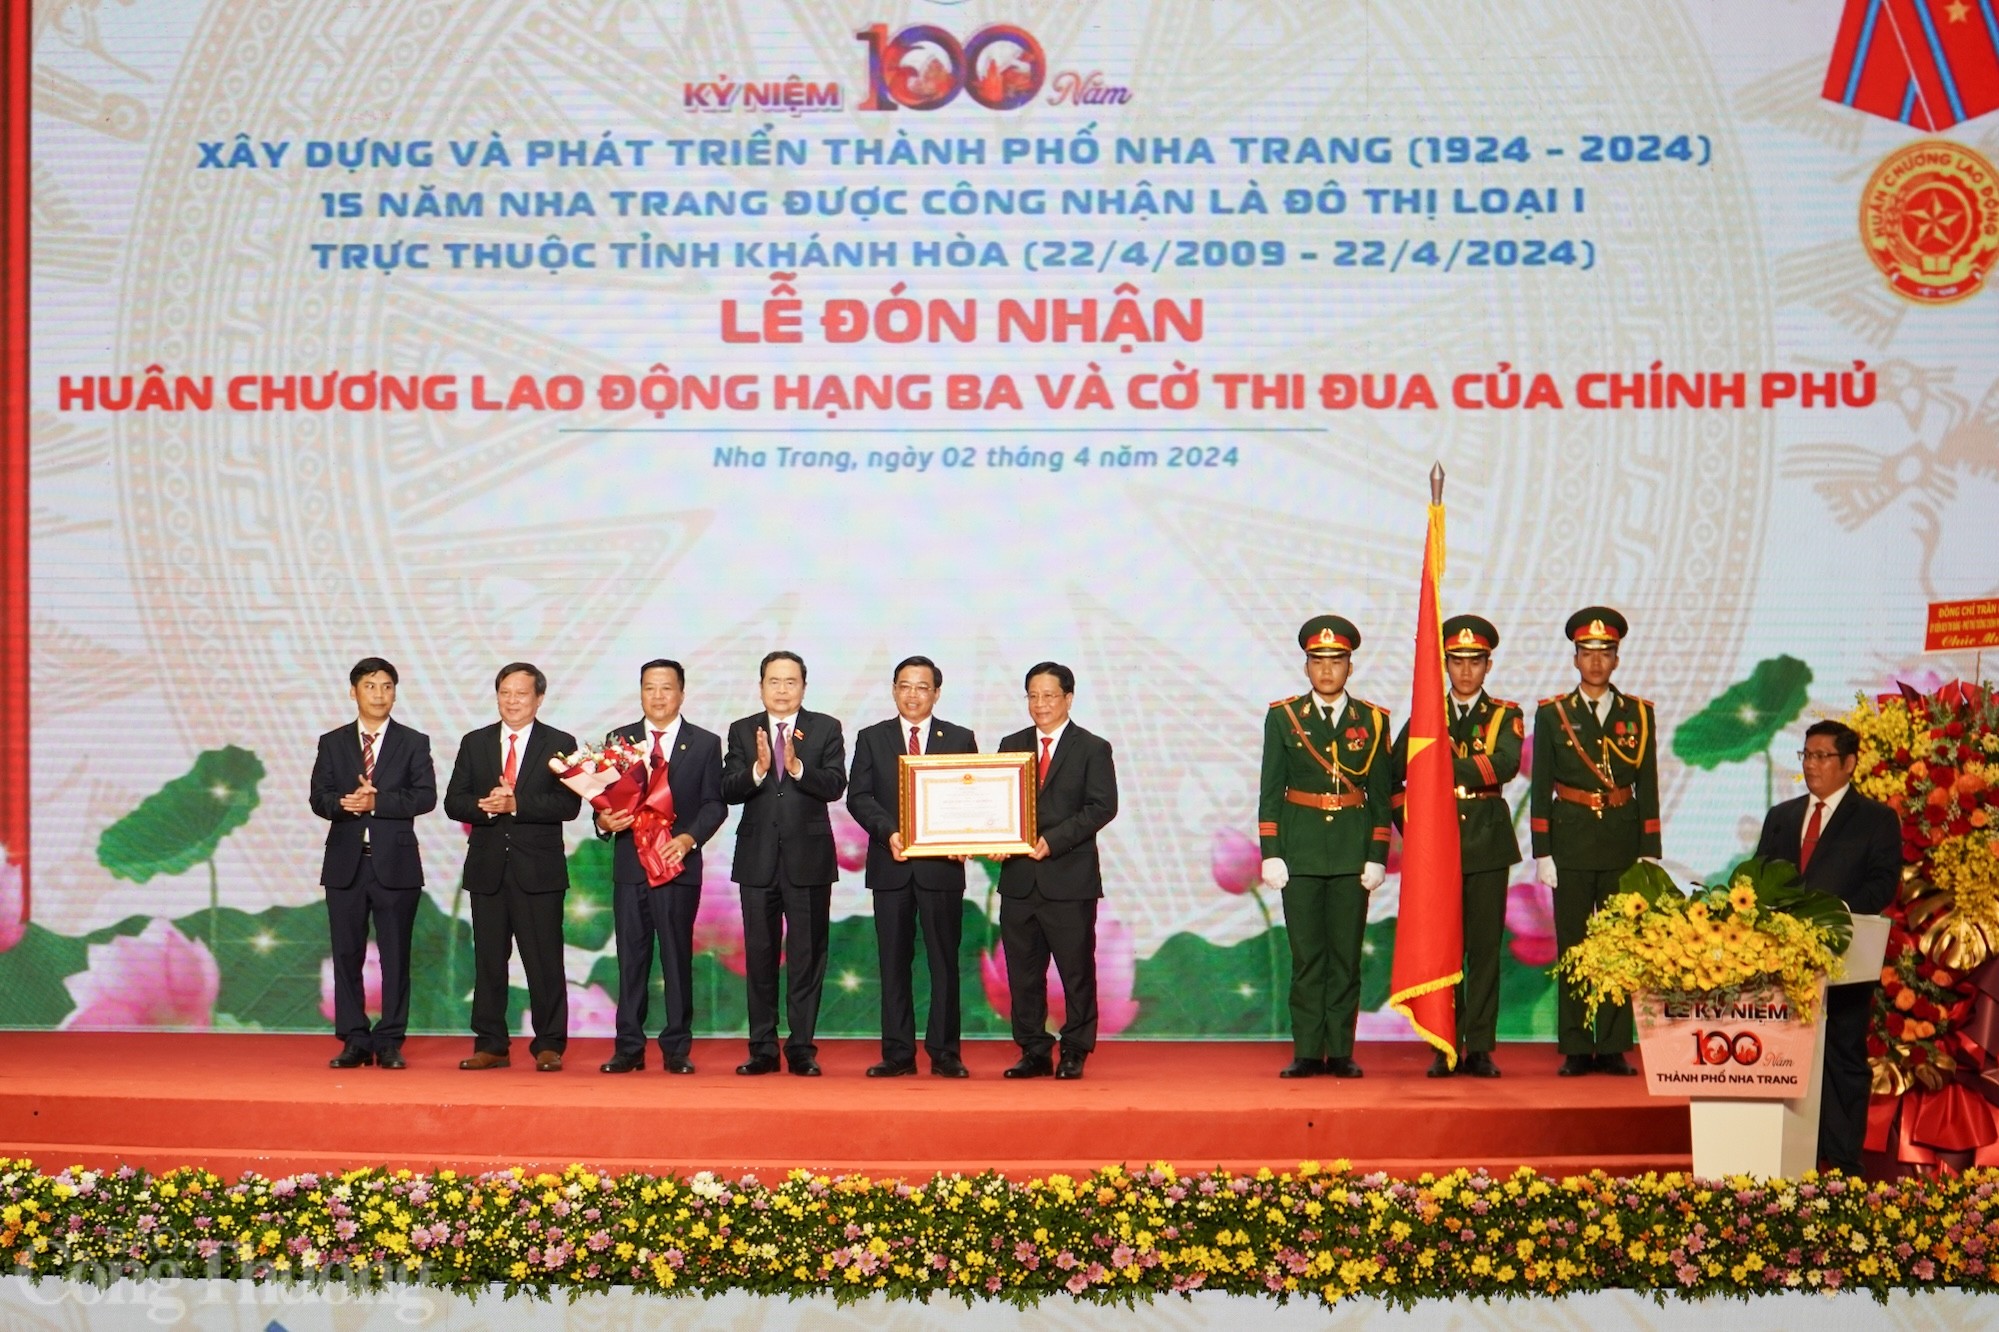 Thành phố Nha Trang kỷ niệm 100 năm xây dựng và phát triển